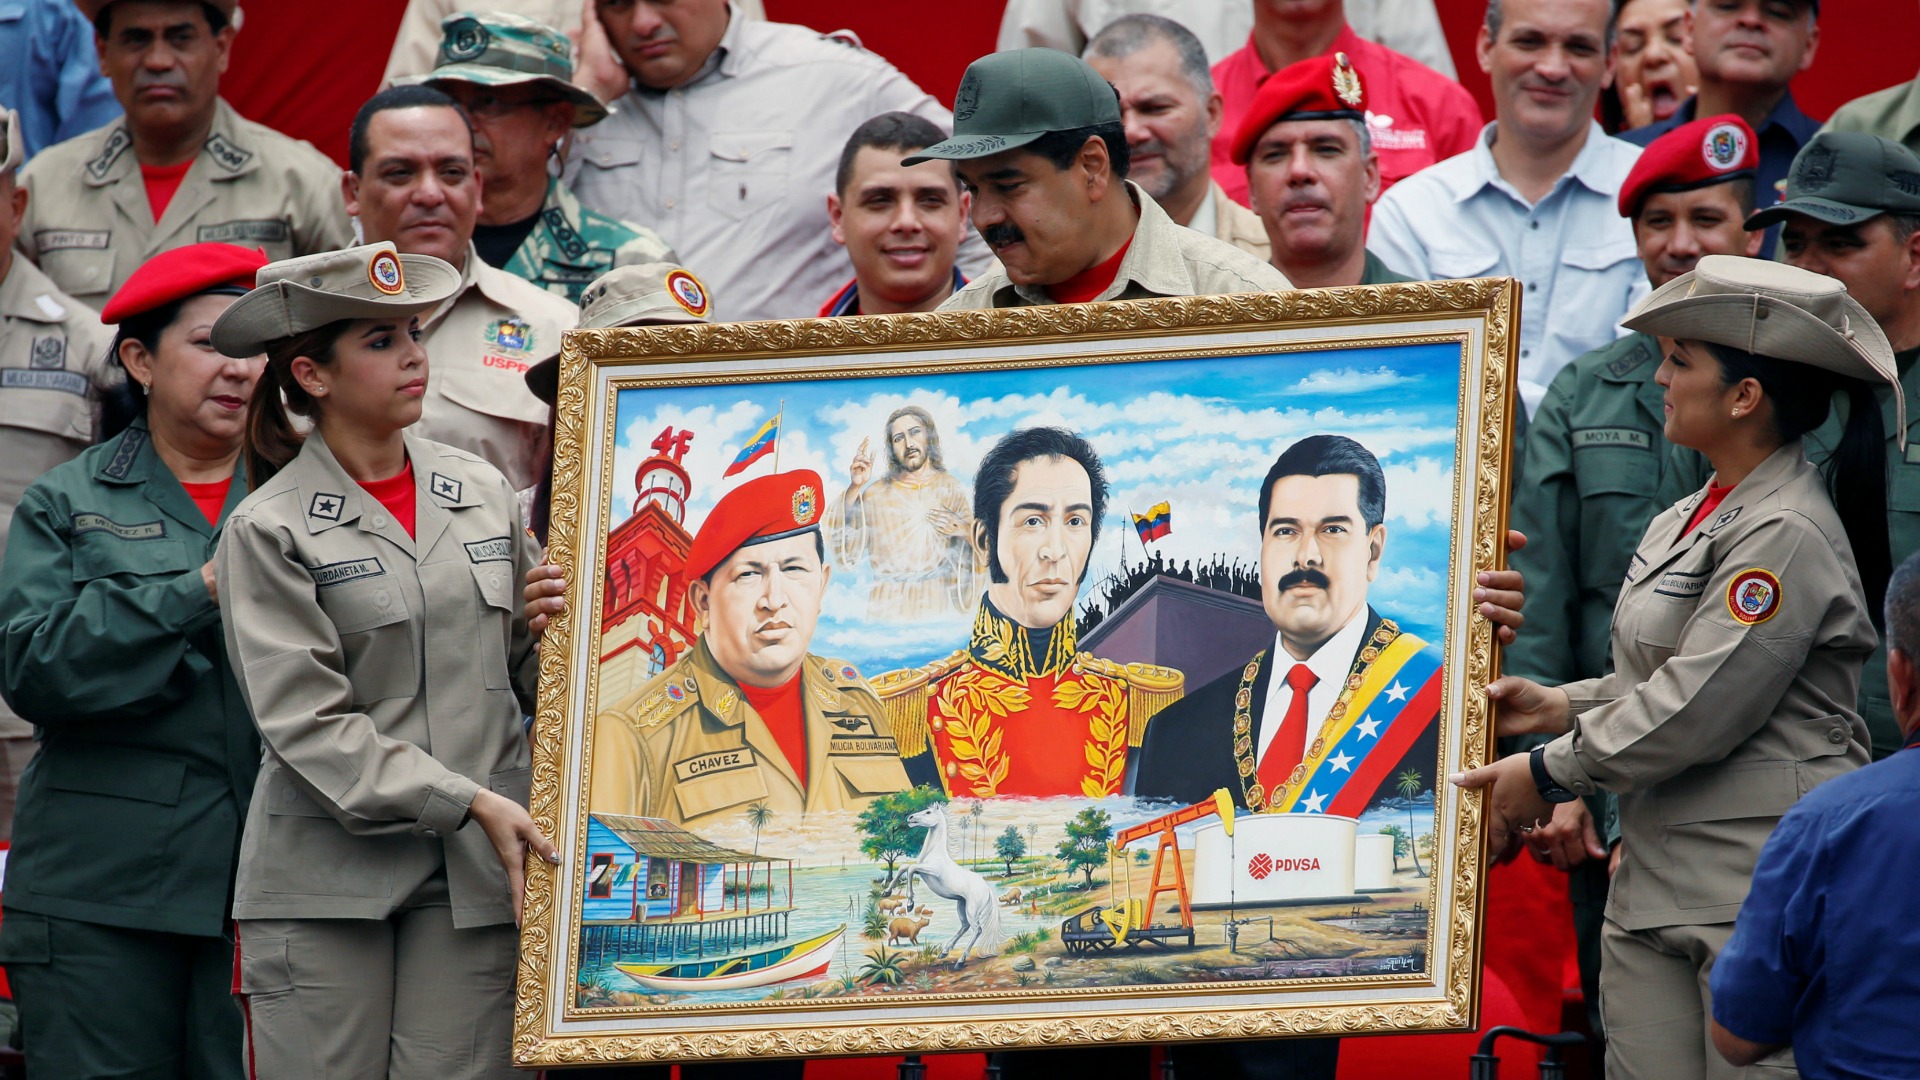 Los militares venezolanos prometen "lealtad" a Maduro en vísperas de la gran manifestación